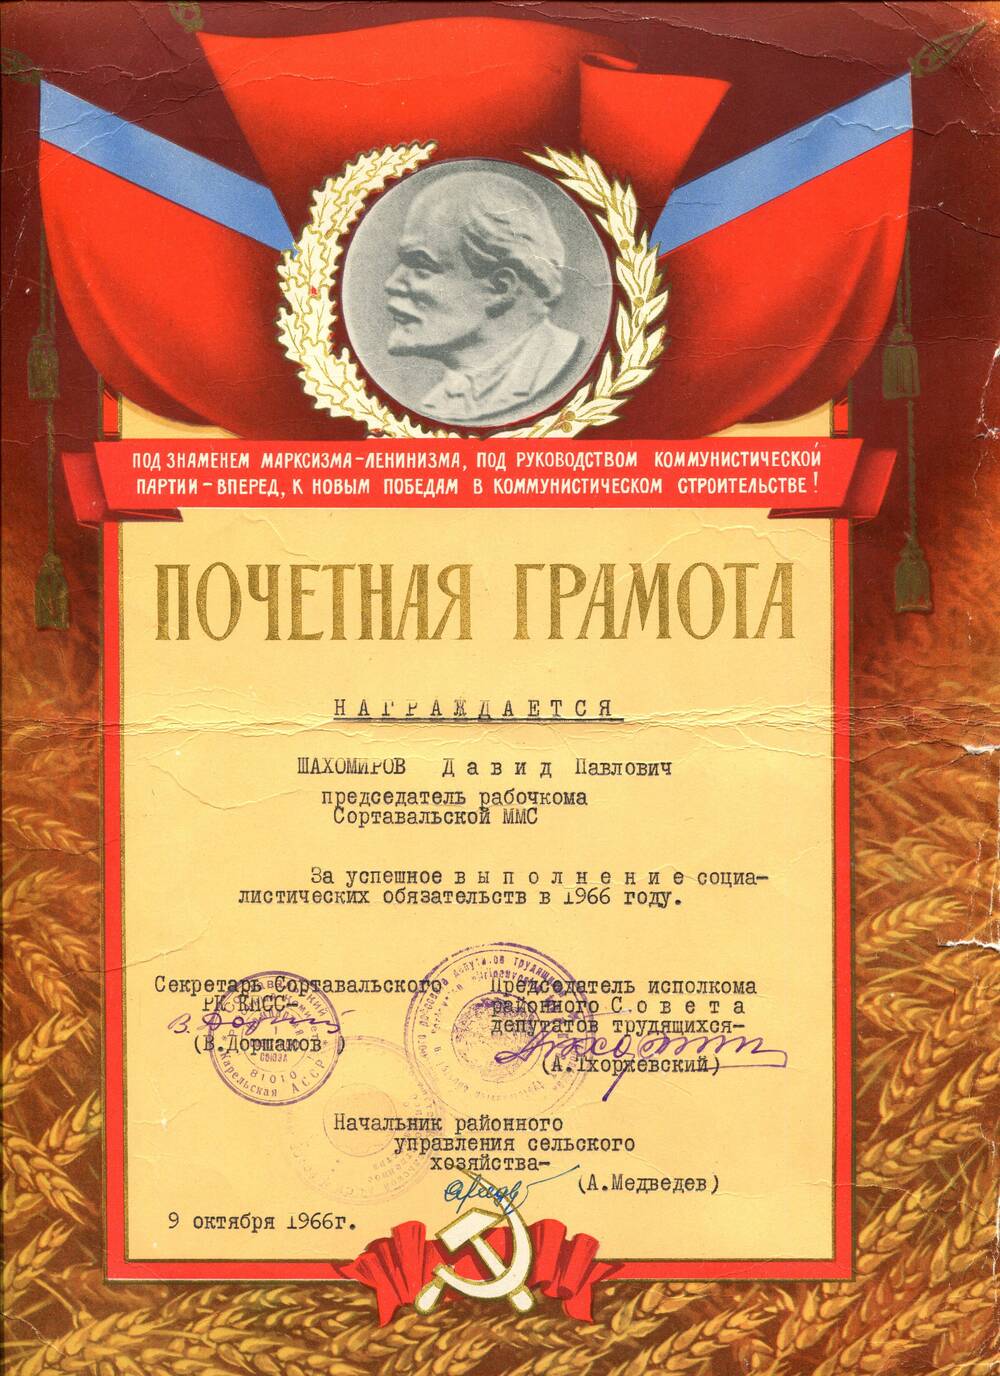 Документ. Почетная грамота. Награждается Шахомиров Д.П., председатель рабочкома Сортавальской ММС, за успешное выполнение социалистических обязательств в 1966 г. Союз Советских Социалистических Республик, 1966 г.